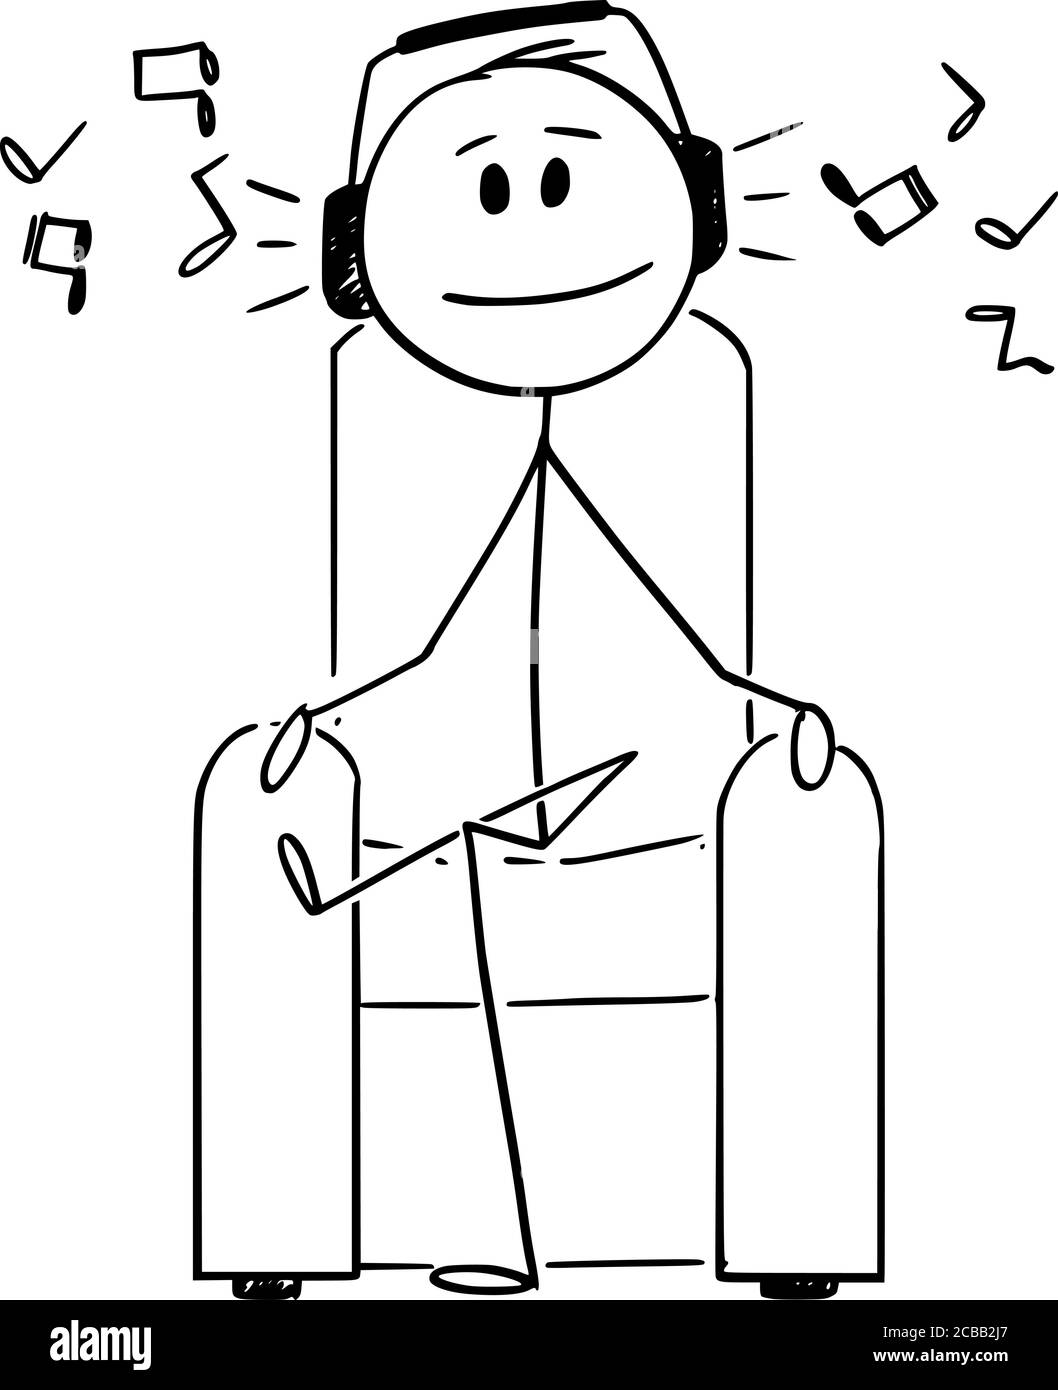 Vektor Cartoon Stick Figur Zeichnung konzeptionelle Illustration des Menschen mit Kopfhörer sitzen im Sessel Musik hören und genießen. Stock Vektor